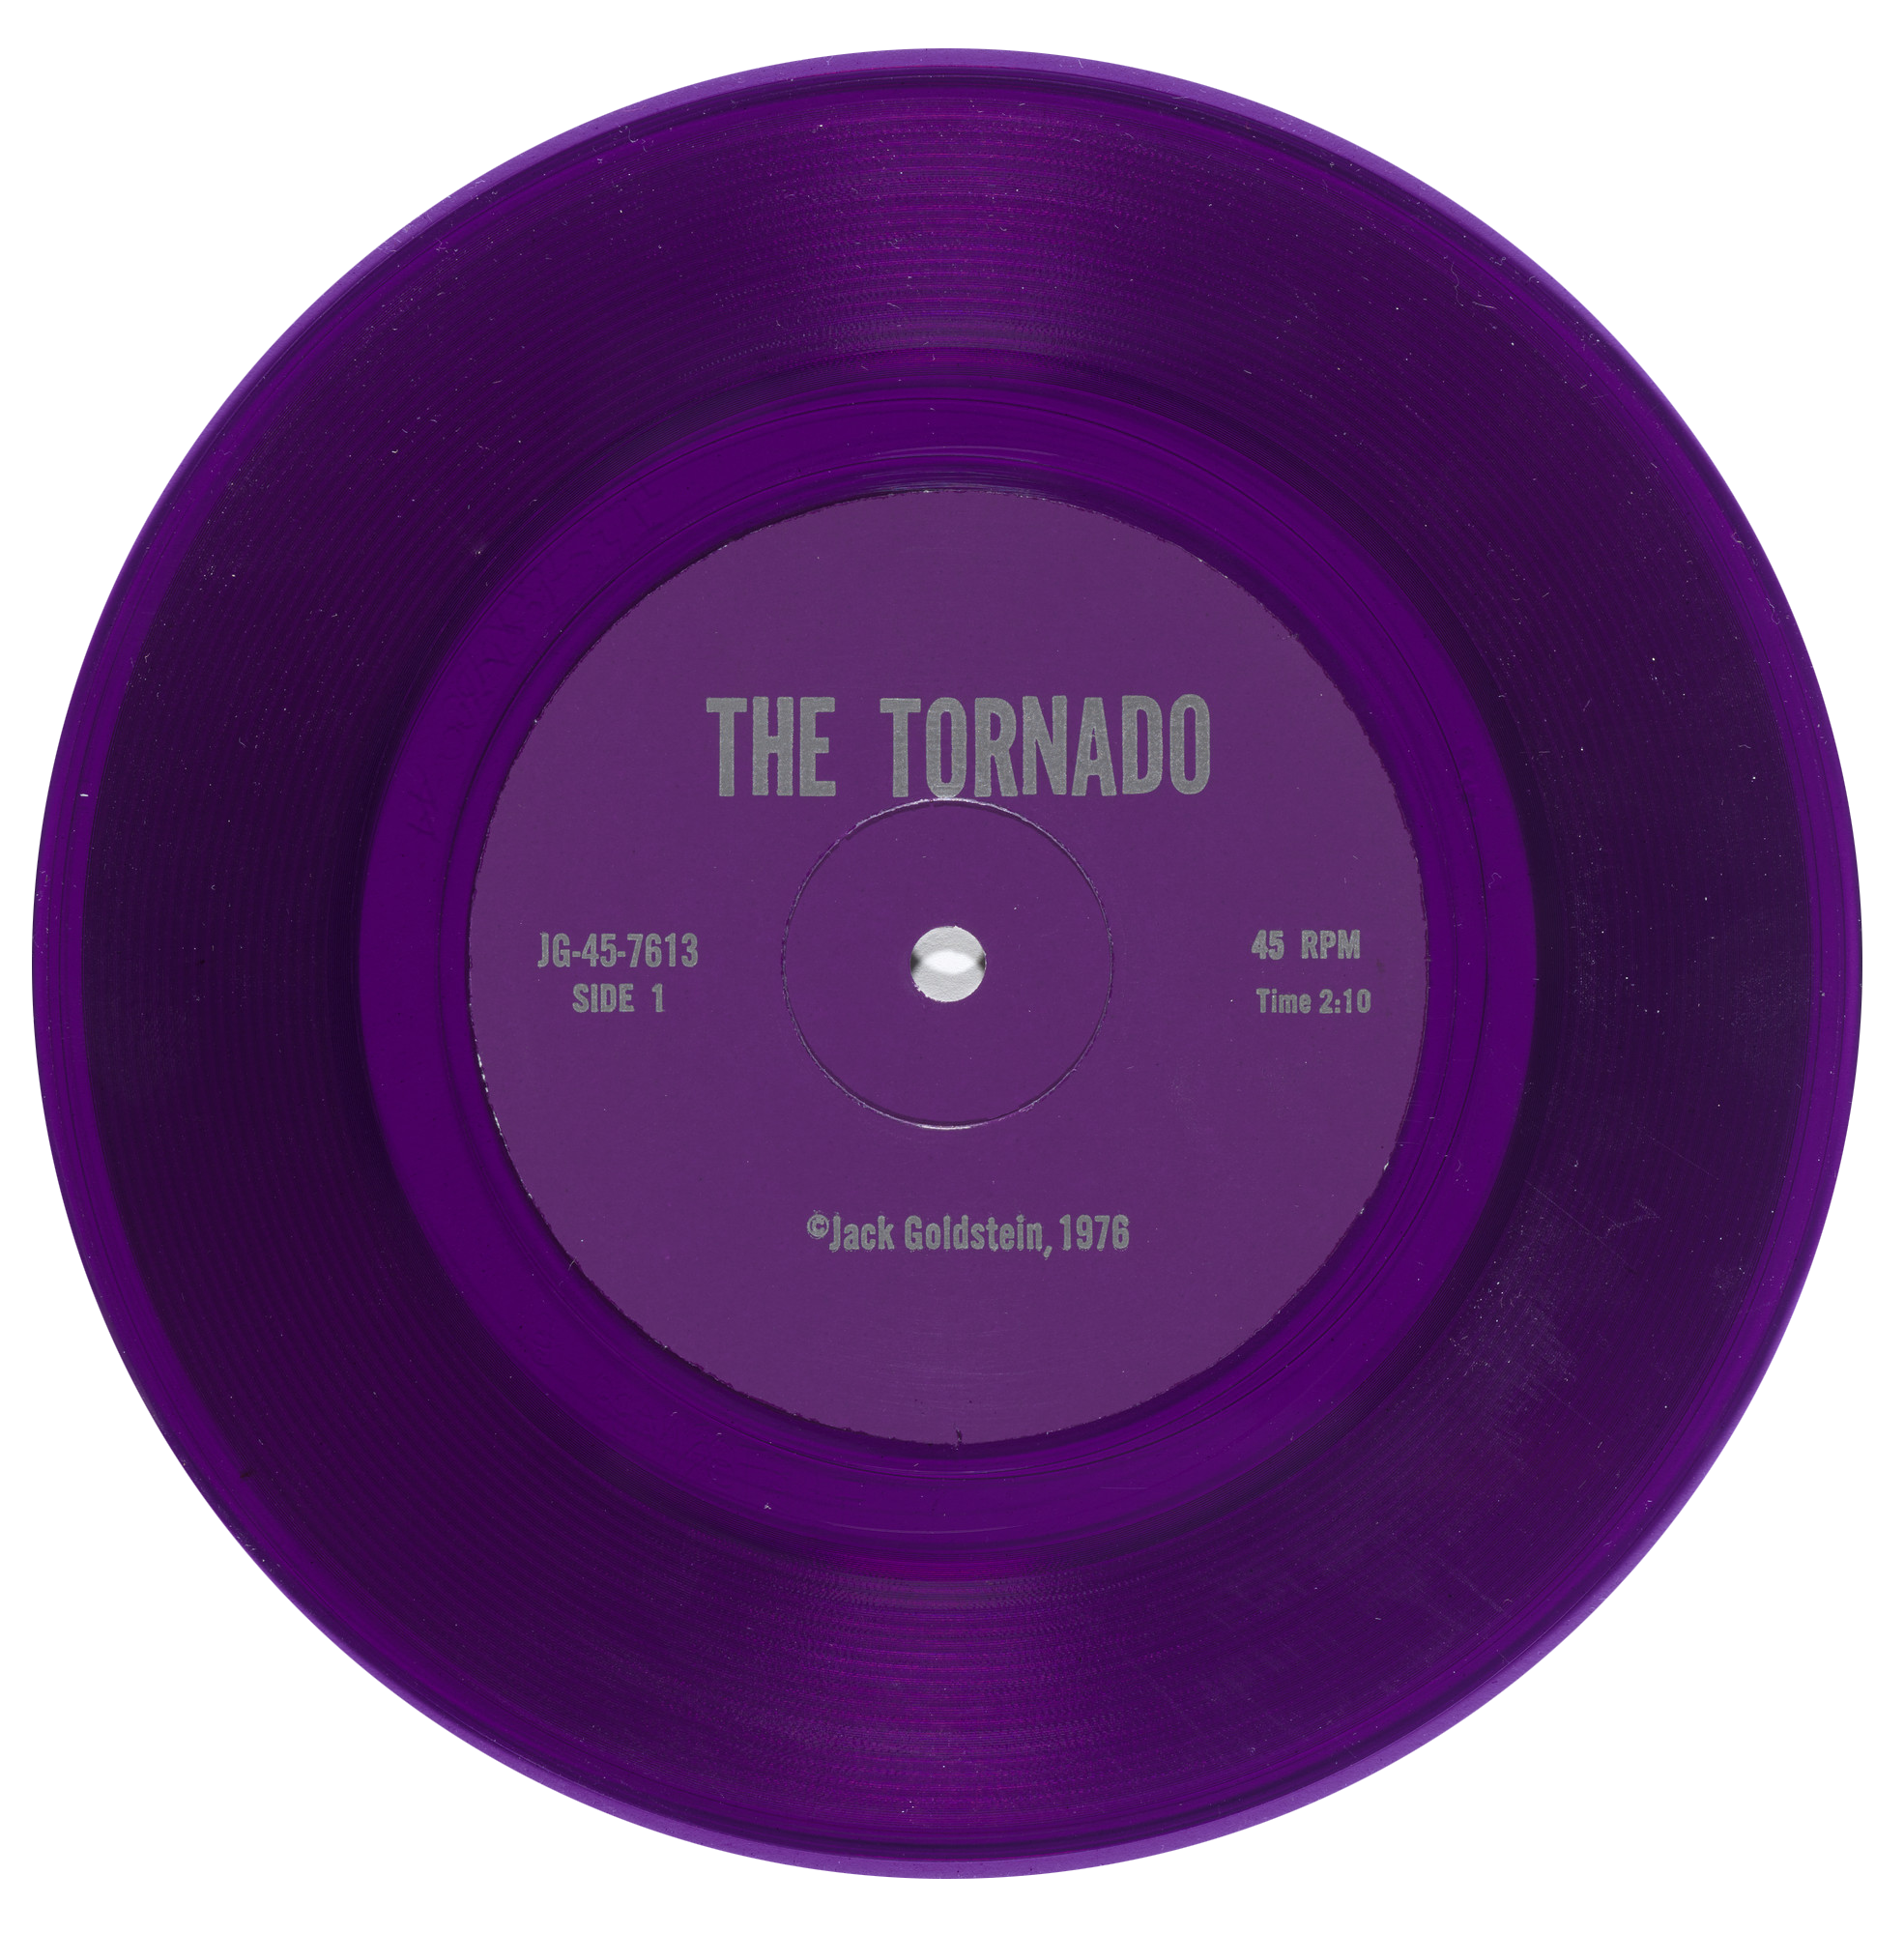  The Tornado
Purple vinyl - 45 rpm 7-inch record

The Tornado est un des neuf éléments constitutifs de :
A Suite of Nine 45 rpm 7-Inch Records with Sound Effects
1976